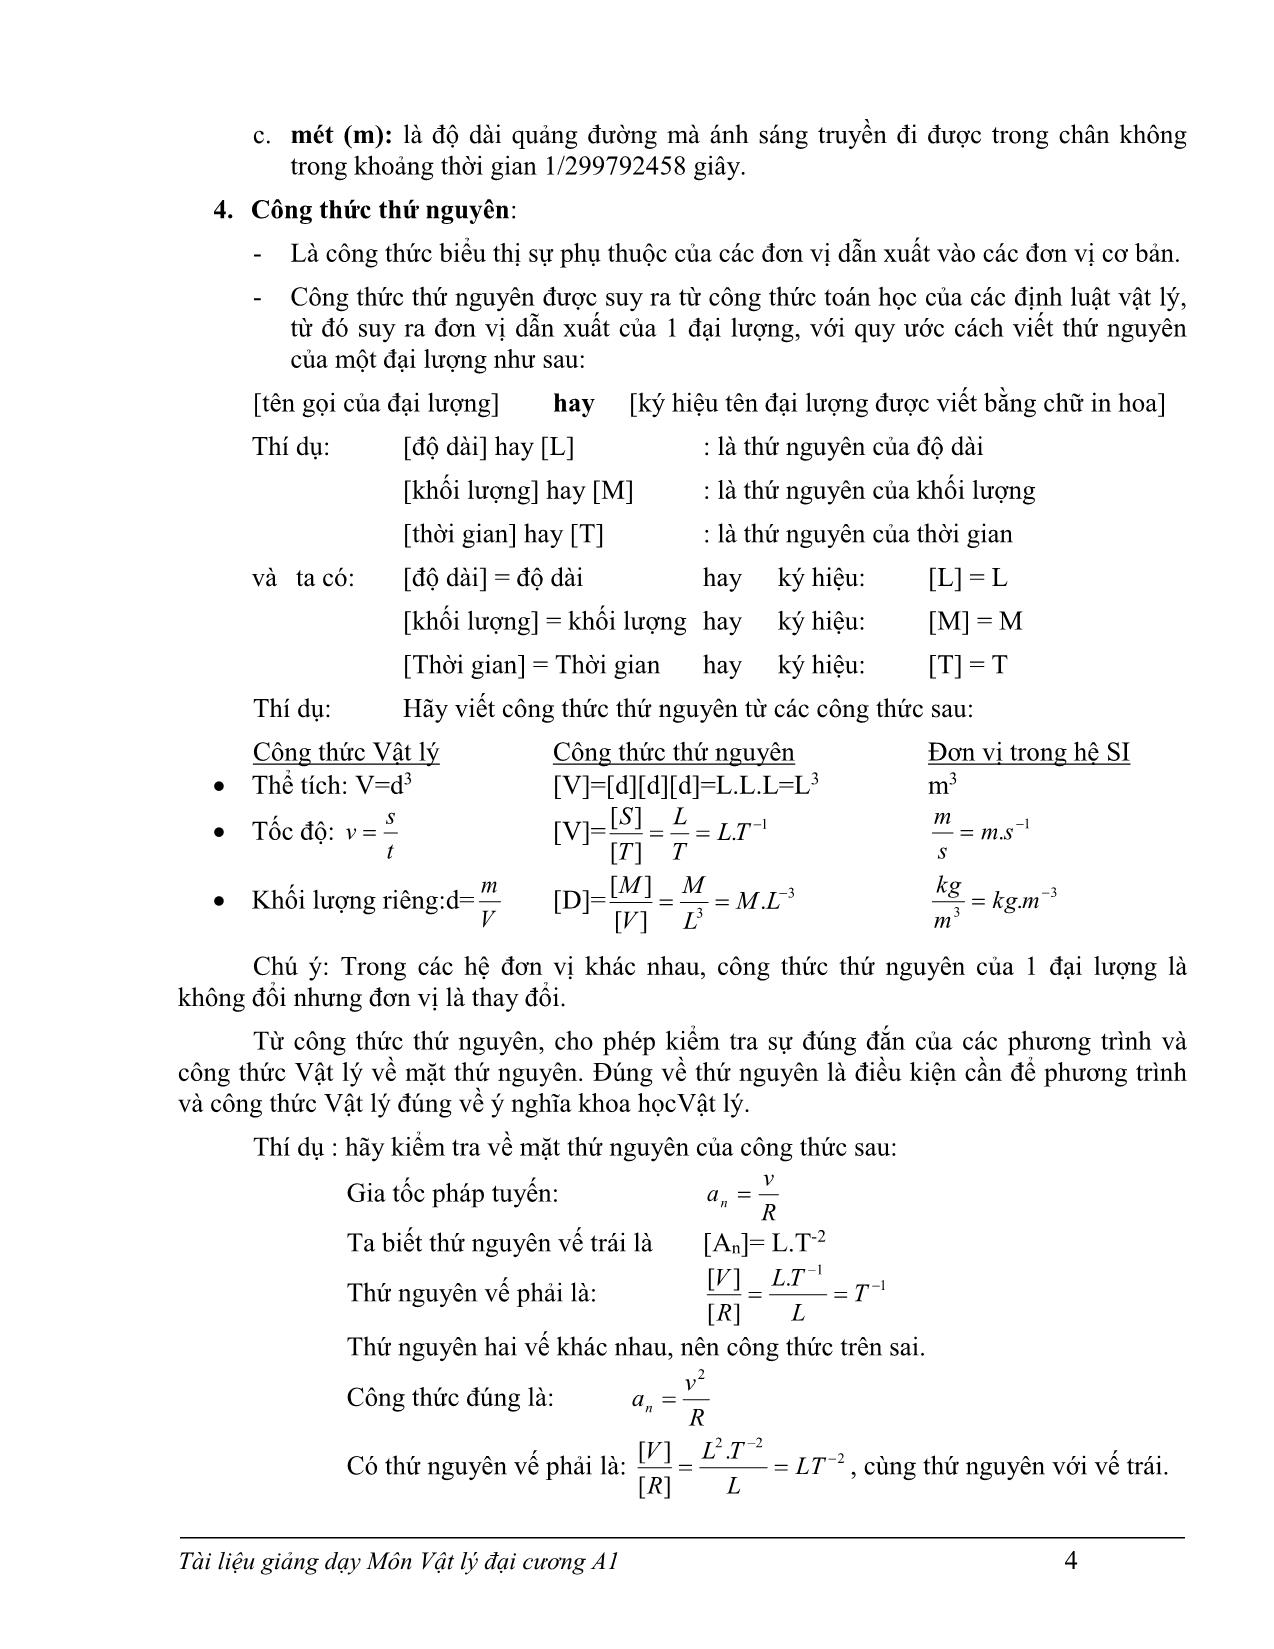 Giáo trình Vật lý đại cương A1 trang 6